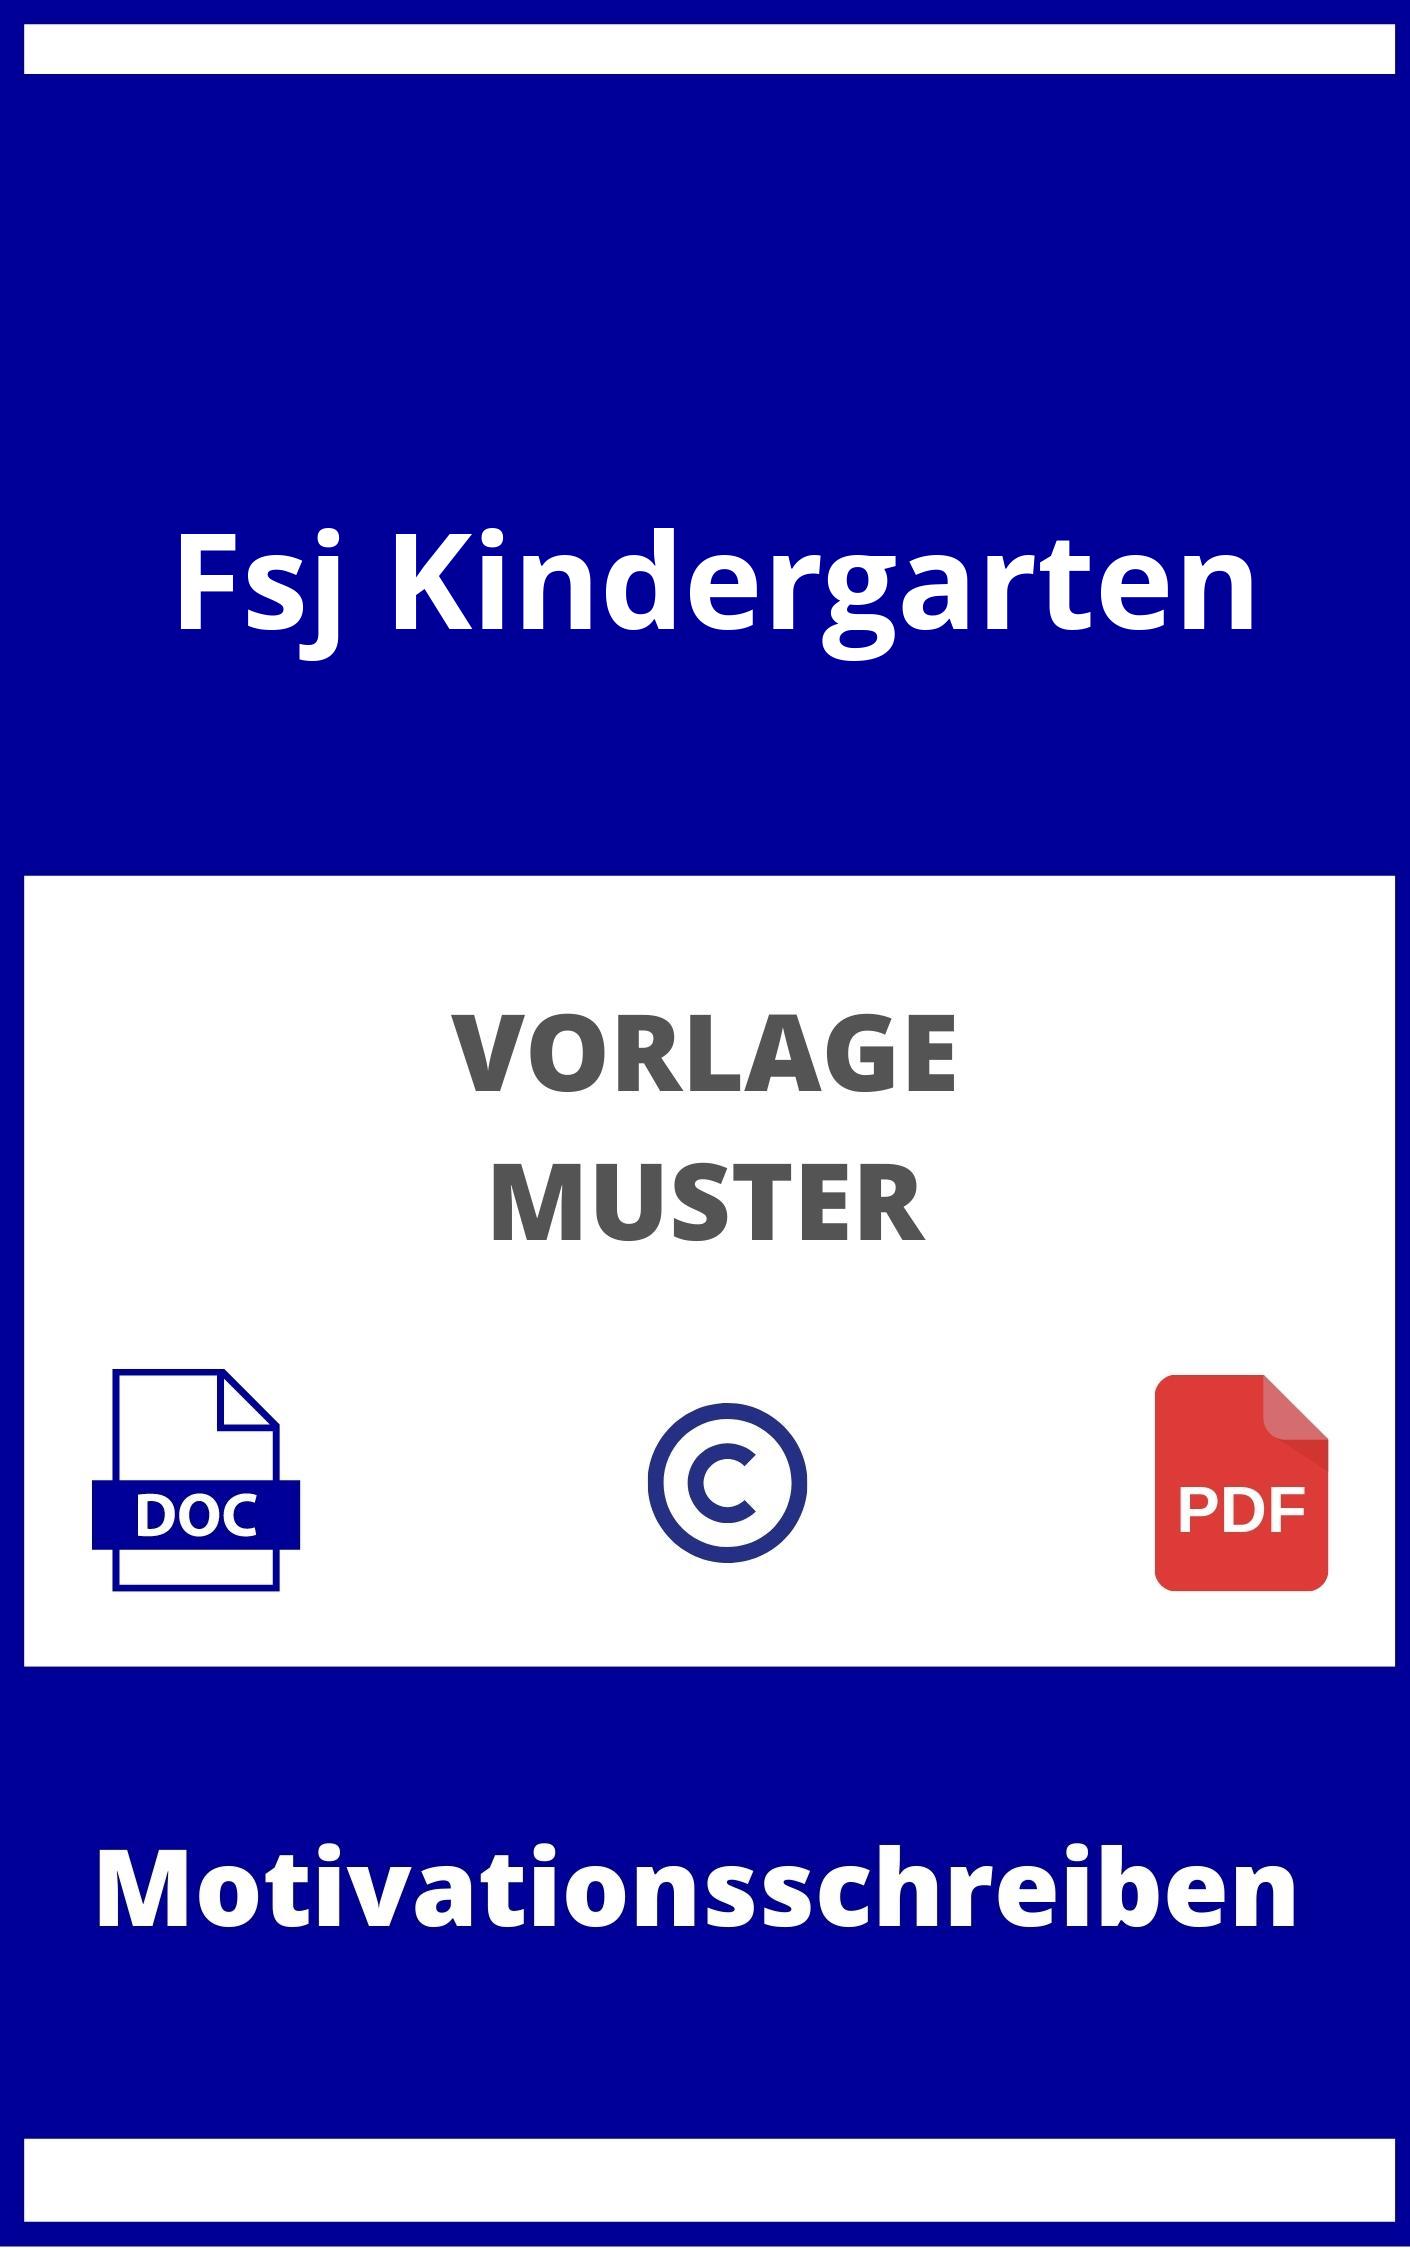 Motivationsschreiben Fsj Kindergarten